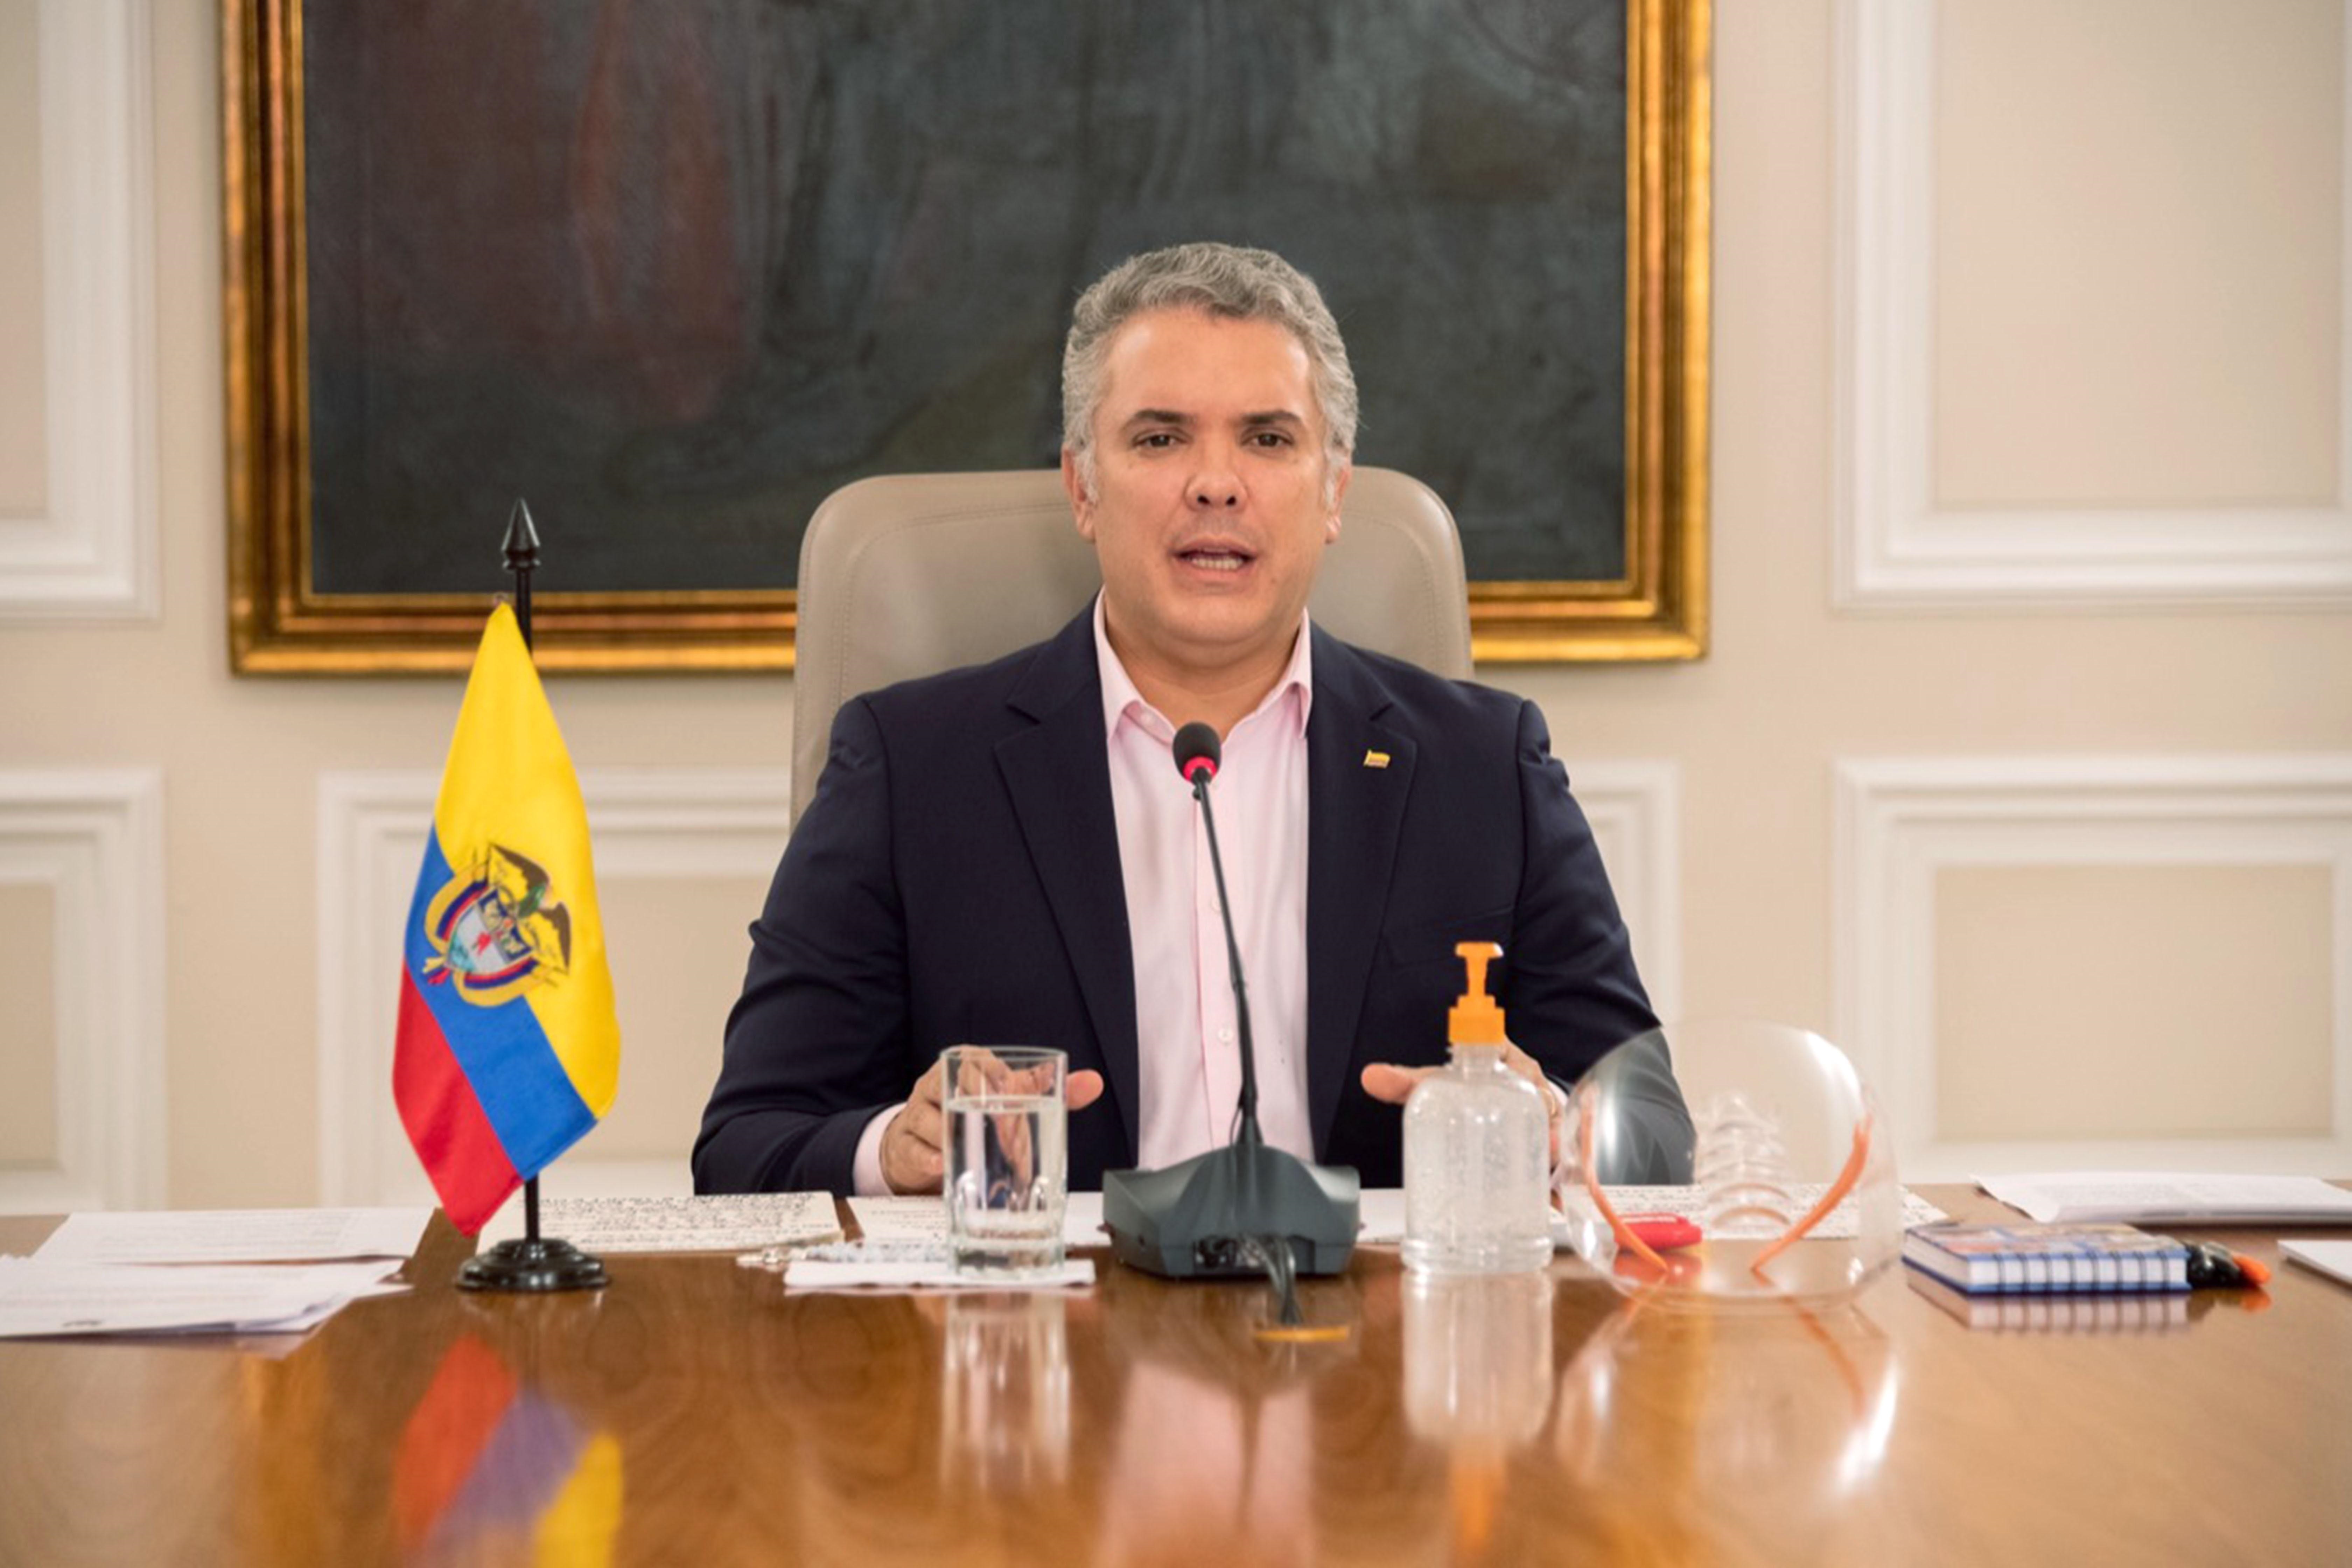 “Soy y seré siempre un creyente en la inocencia de Uribe”, afirmó Duque (VIDEO)